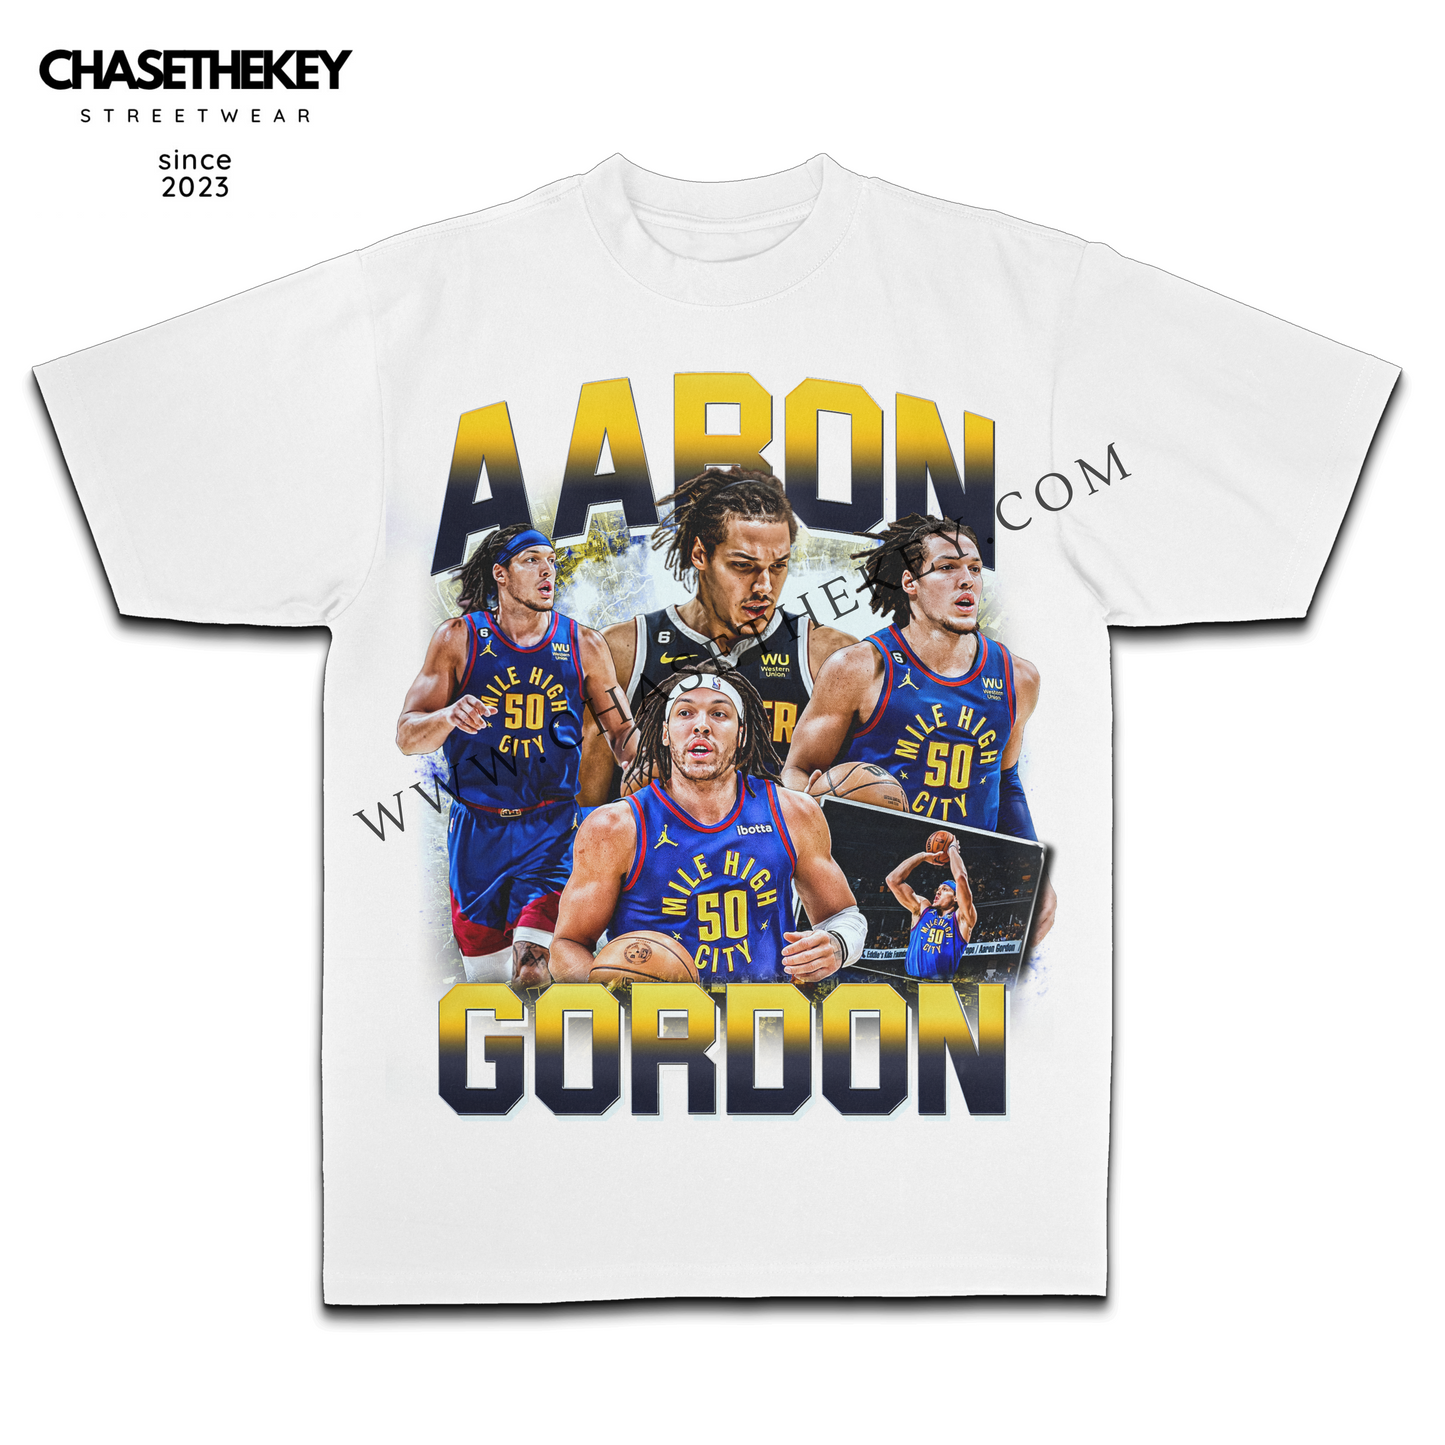 Aaron Gordon Nuggets Shirt